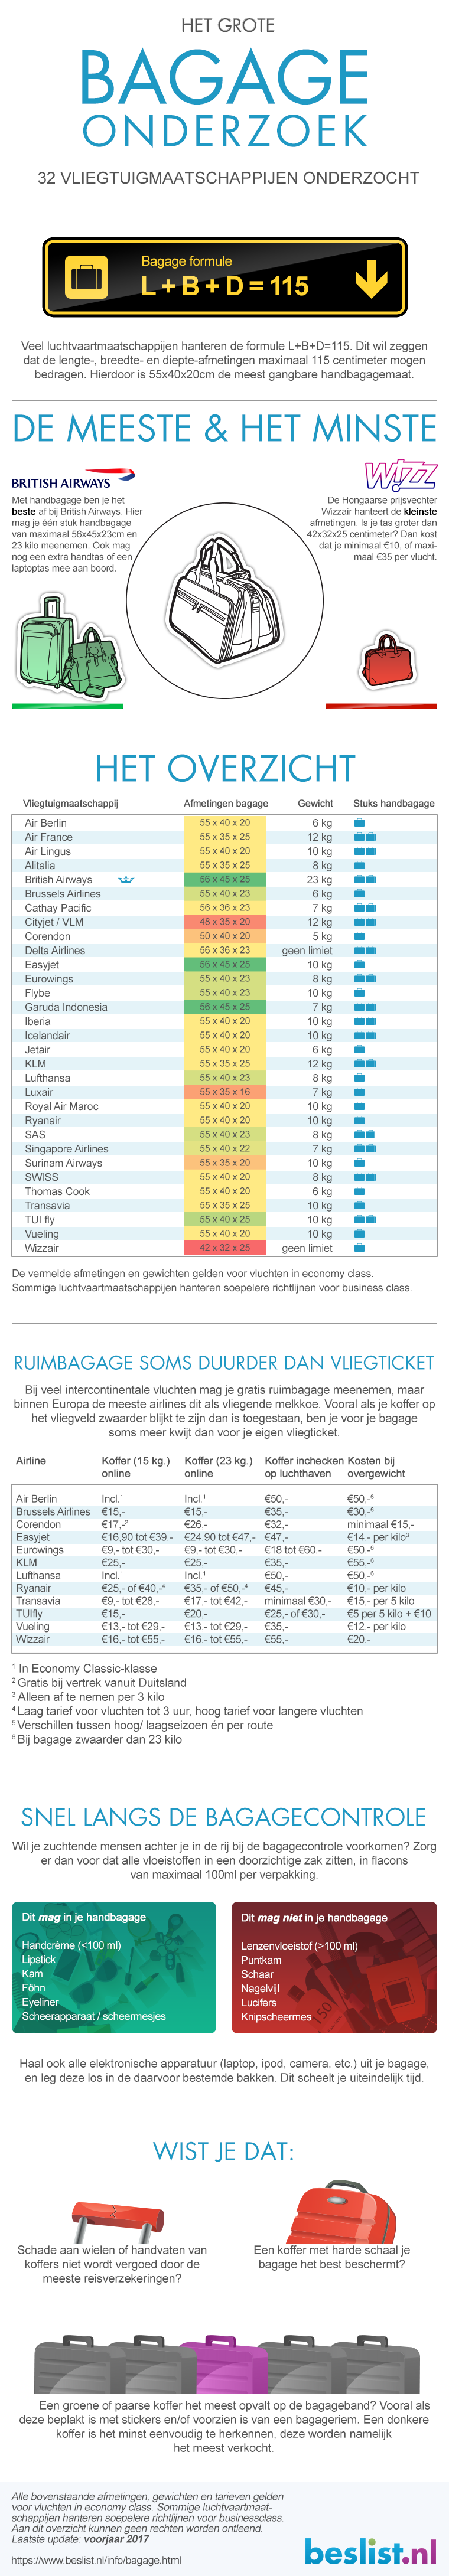 bagage onderzoek en tips van beslist.nl